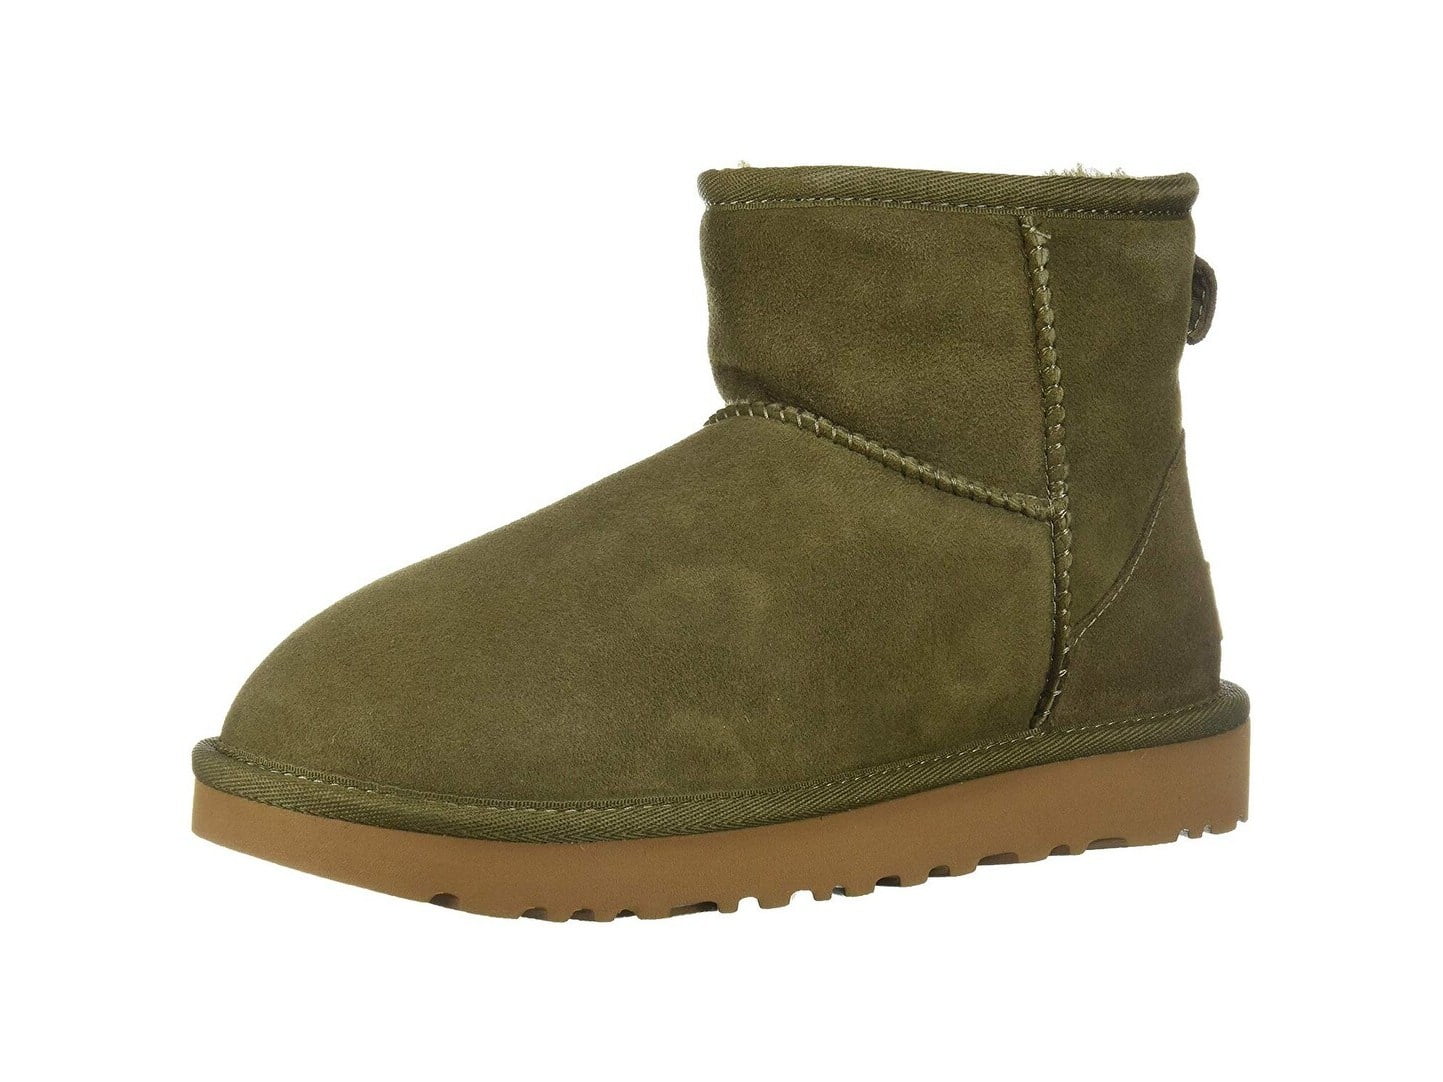 moss green ugg boots